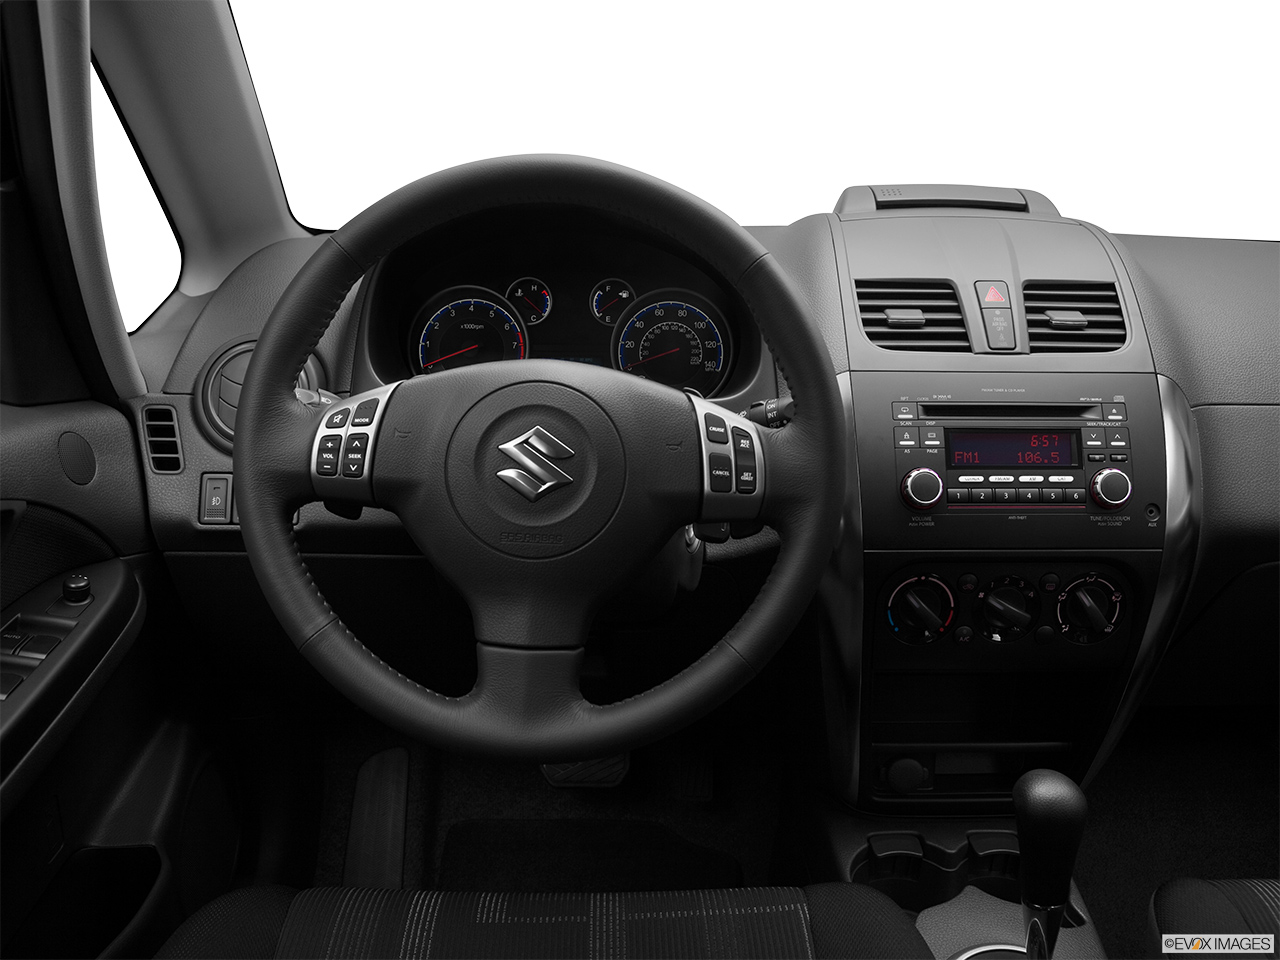 2011 Suzuki SX4 Sportback Technology Steering wheel/Center Console. 